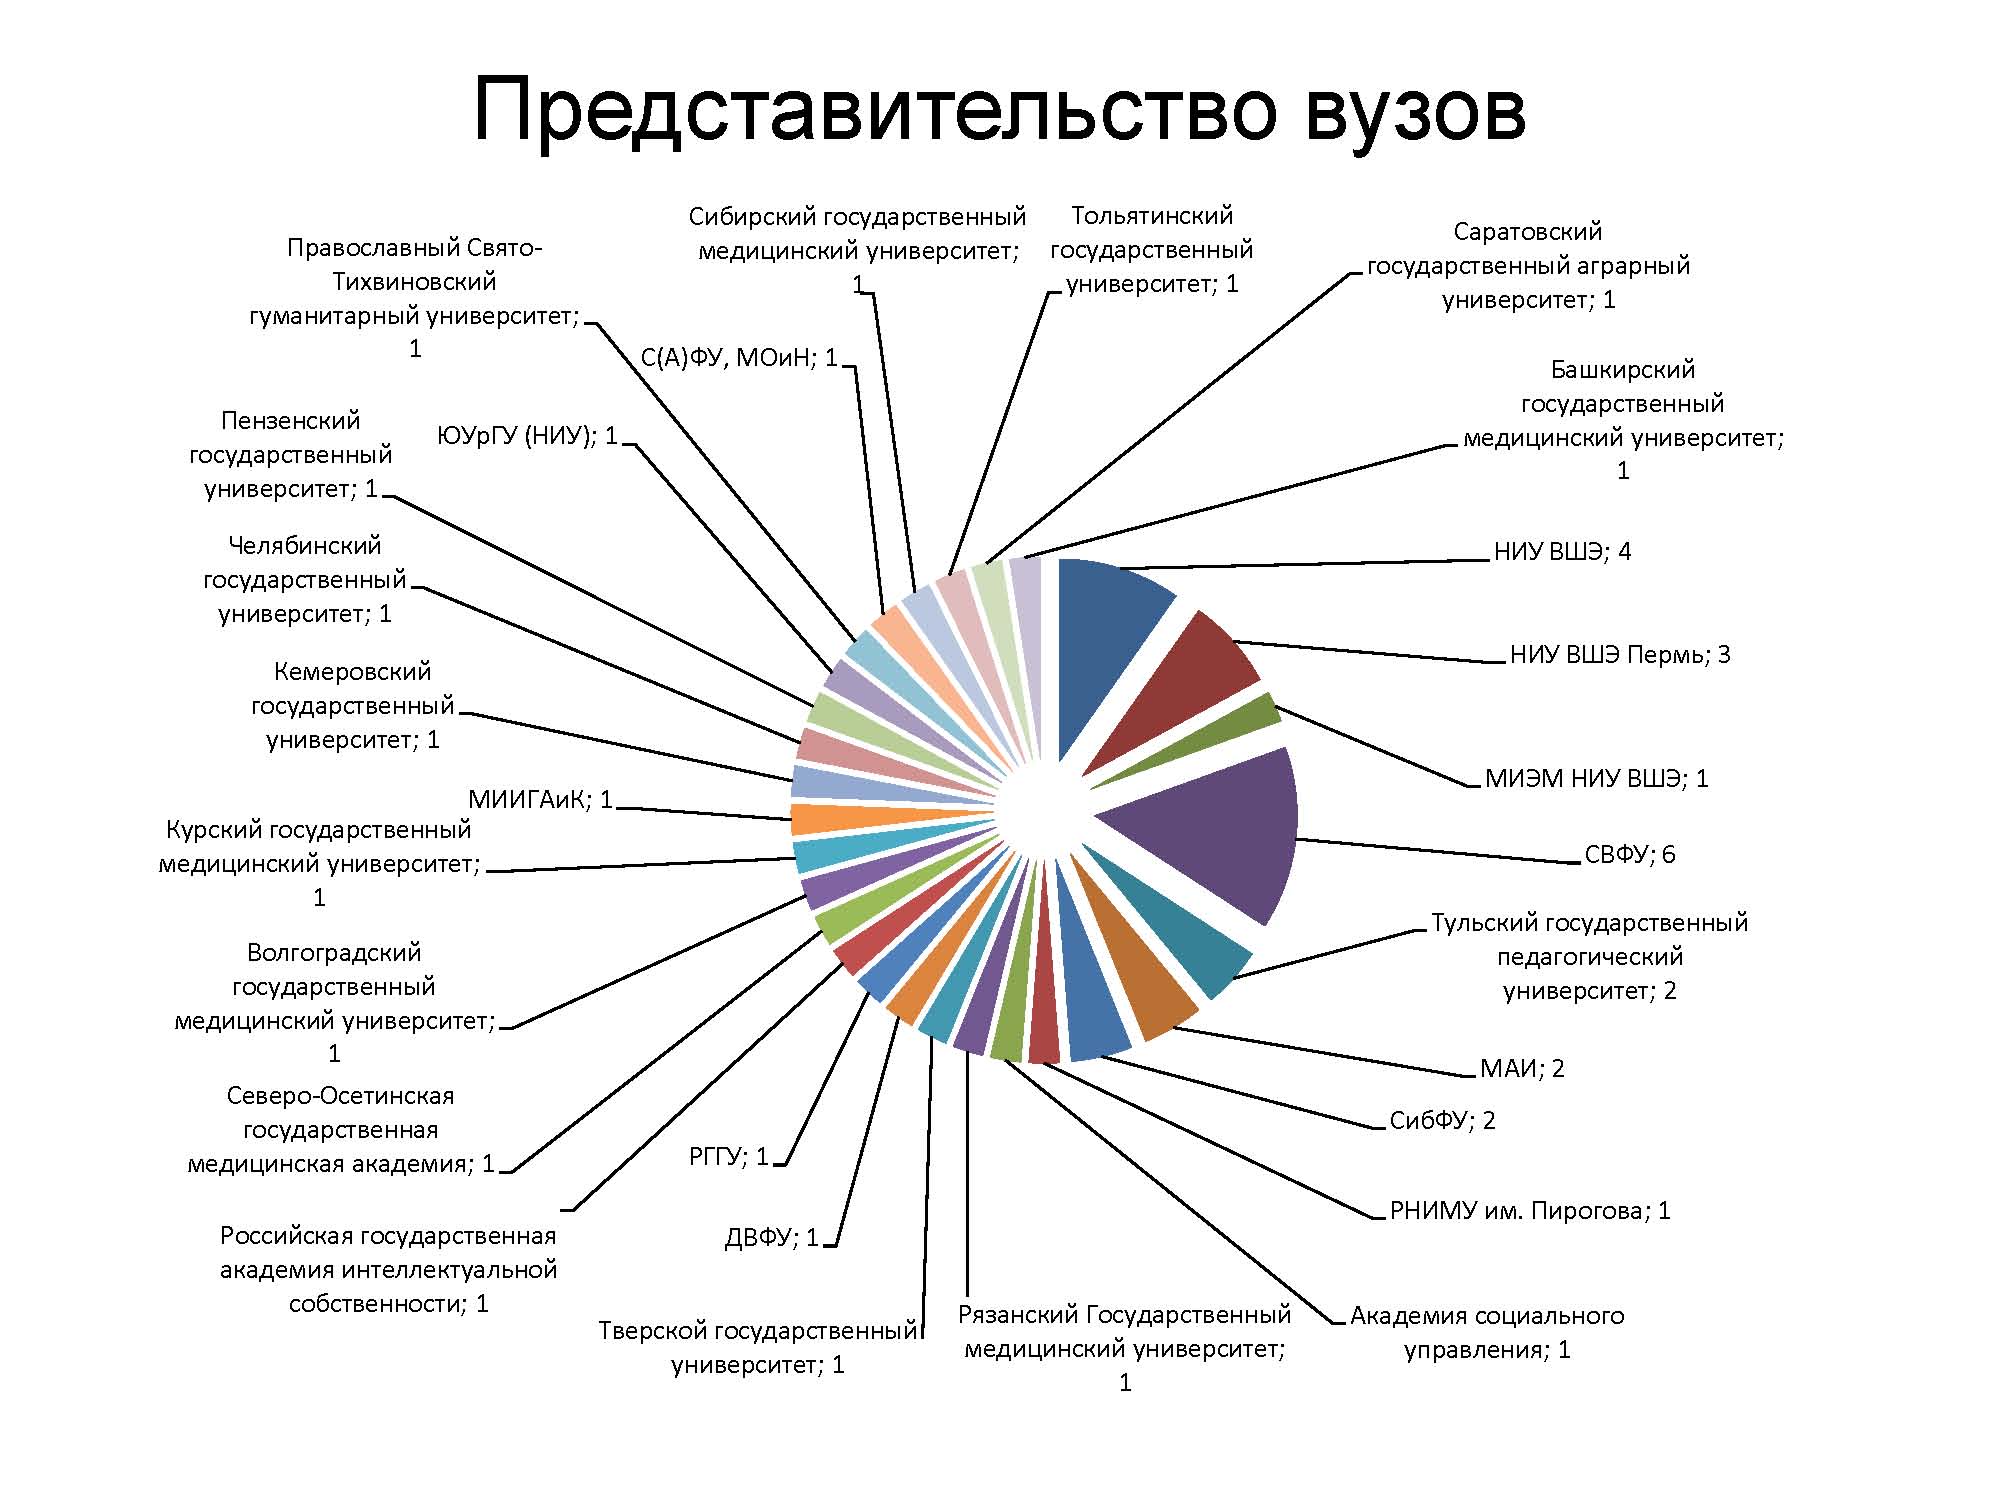 Развитие системы институтов в россии